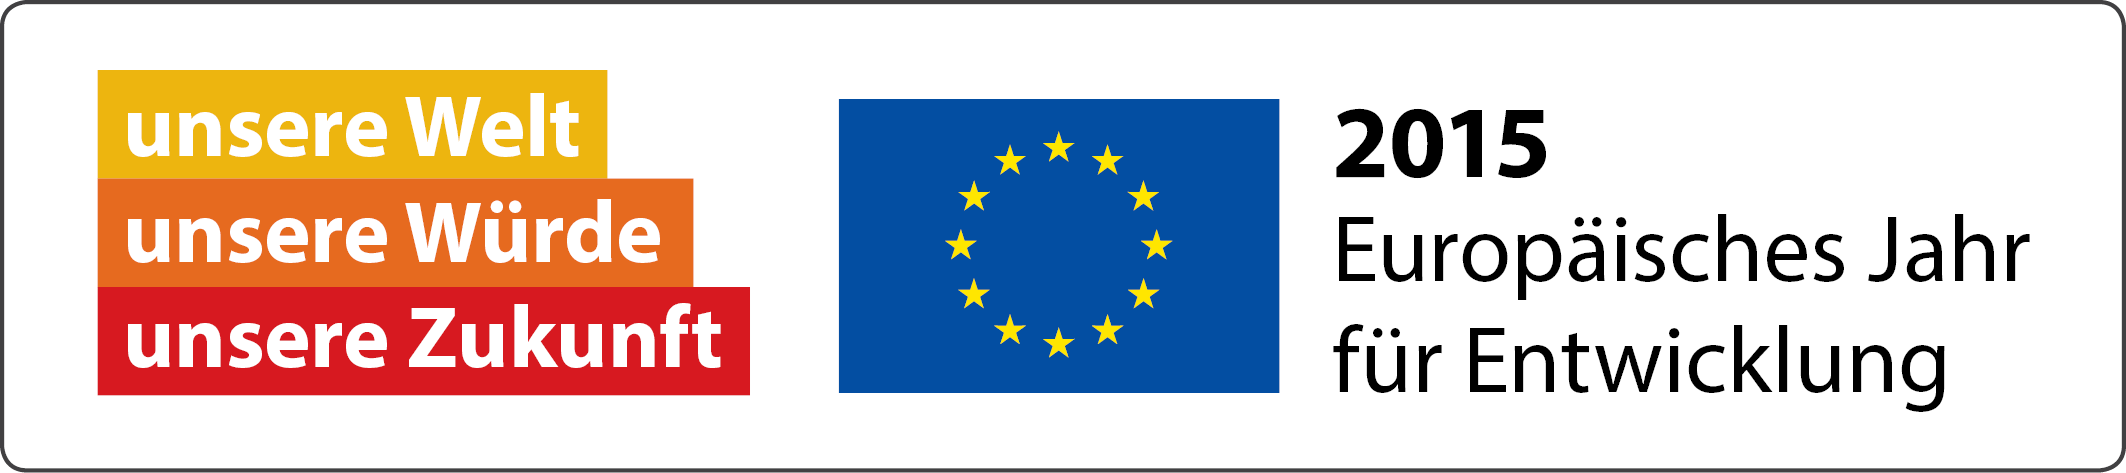 Logo 2015 - Euroäisches Jahr für Entwicklung unter dem Motto unsere Welt unsere Würde unsere Zukunft